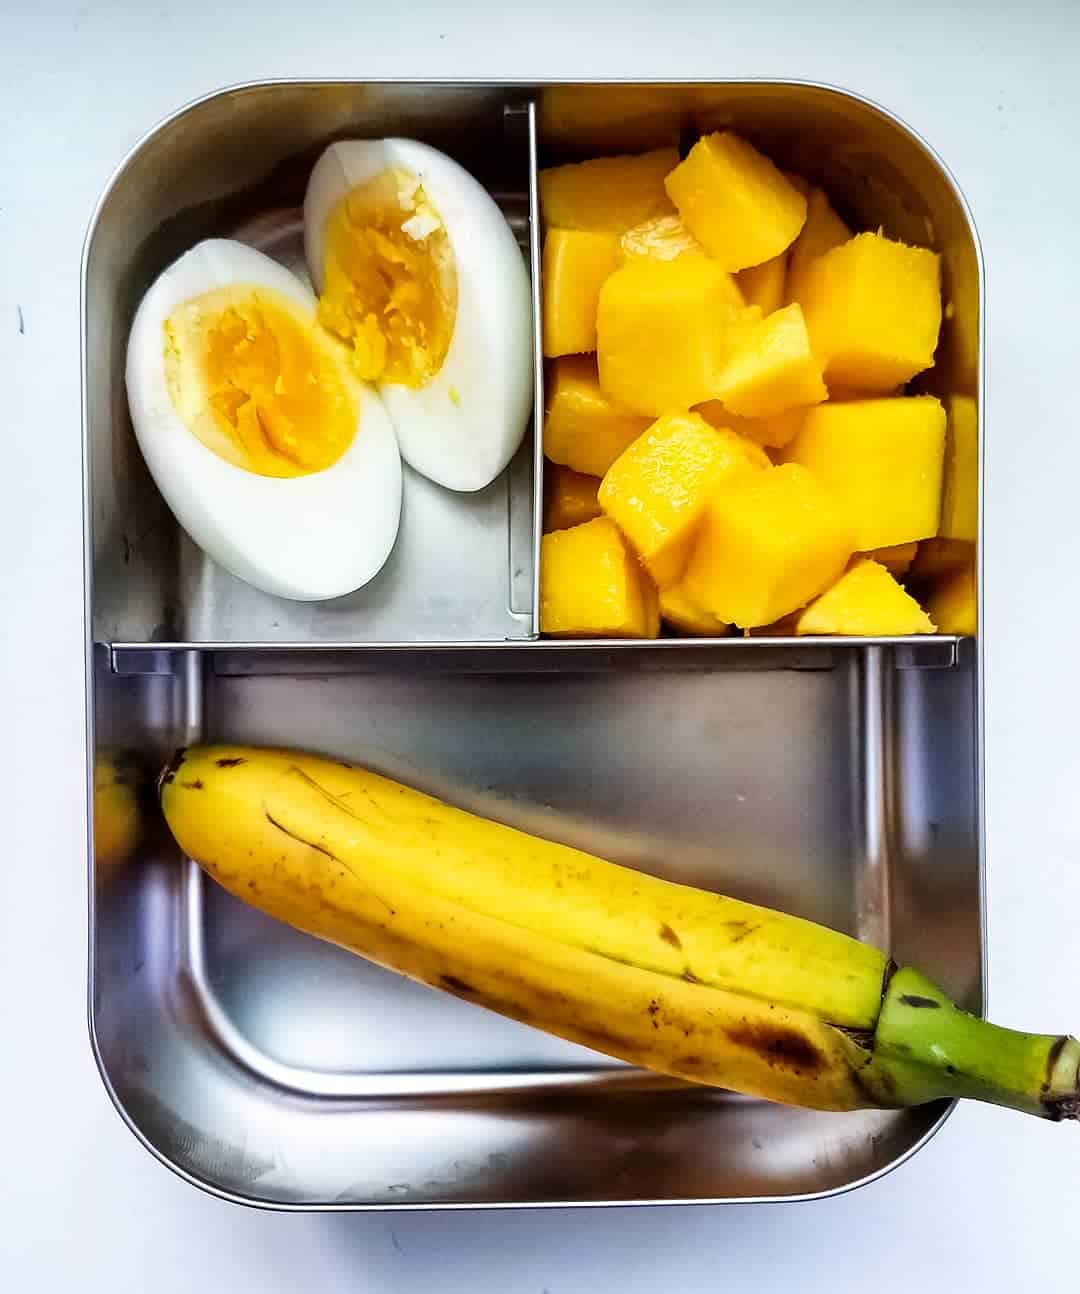 Boiled Egg, baby banana and mango cubes